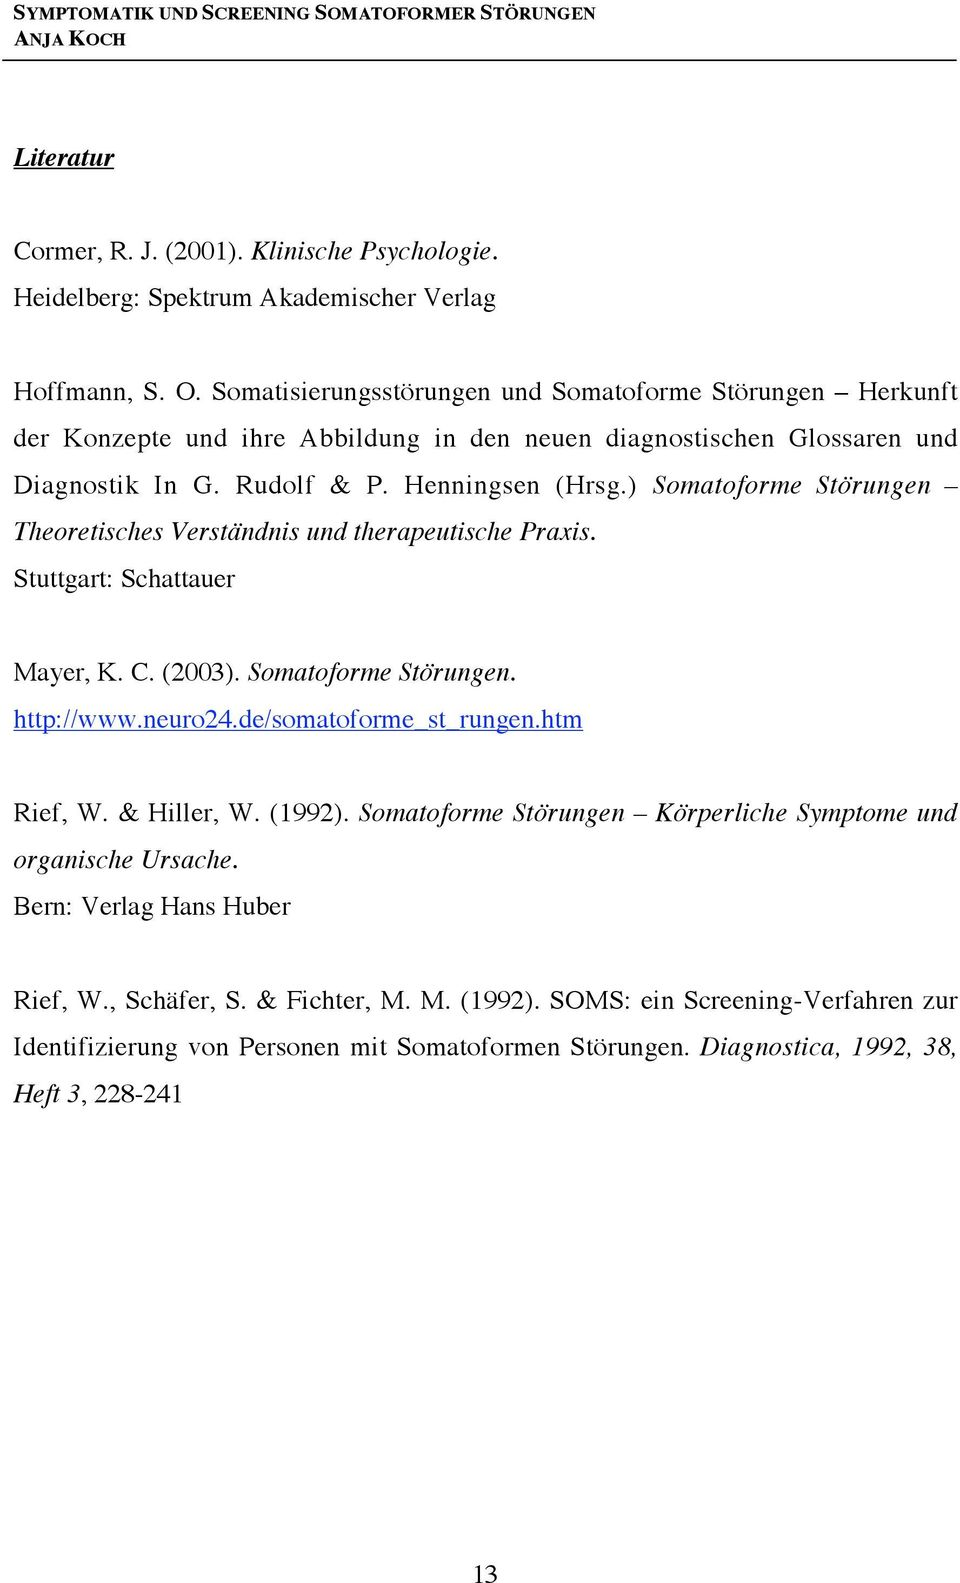 ) Somatoforme Störungen Theoretisches Verständnis und therapeutische Praxis. Stuttgart: Schattauer Mayer, K. C. (2003). Somatoforme Störungen. http://www.neuro24.de/somatoforme_st_rungen.